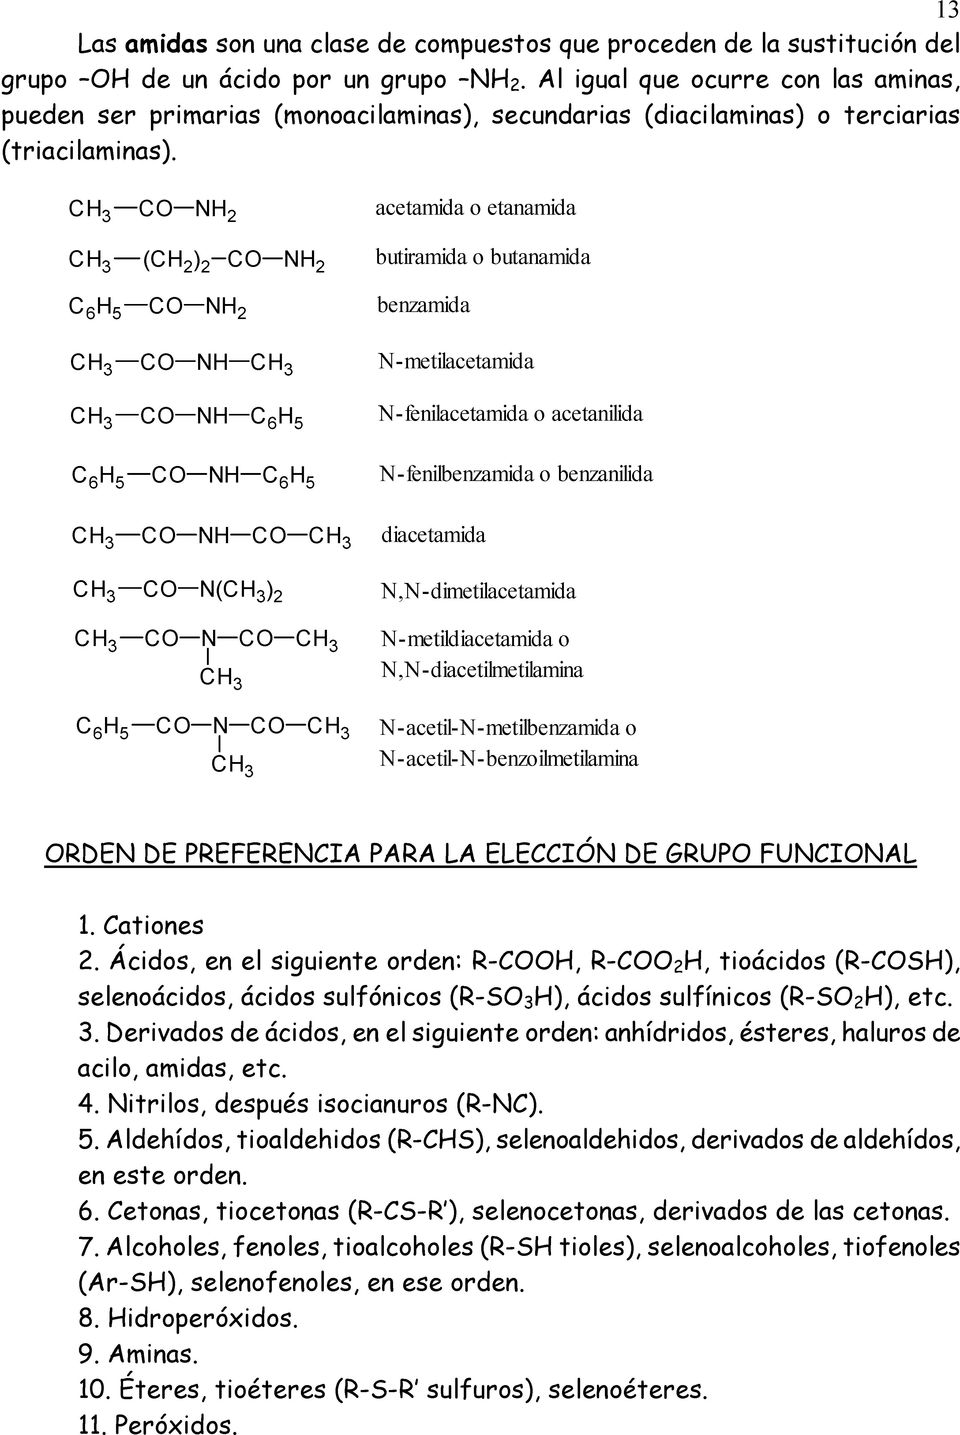 CO NH 2 (CH 2 ) 2 CO NH 2 C 6 H 5 CO NH 2 CO NH CO NH C 6 H 5 C 6 H 5 CO NH C 6 H 5 CO NH CO CO N( ) 2 CO N CO C 6 H 5 CO N CO acetamida o etanamida butiramida o butanamida benzamida N-metilacetamida